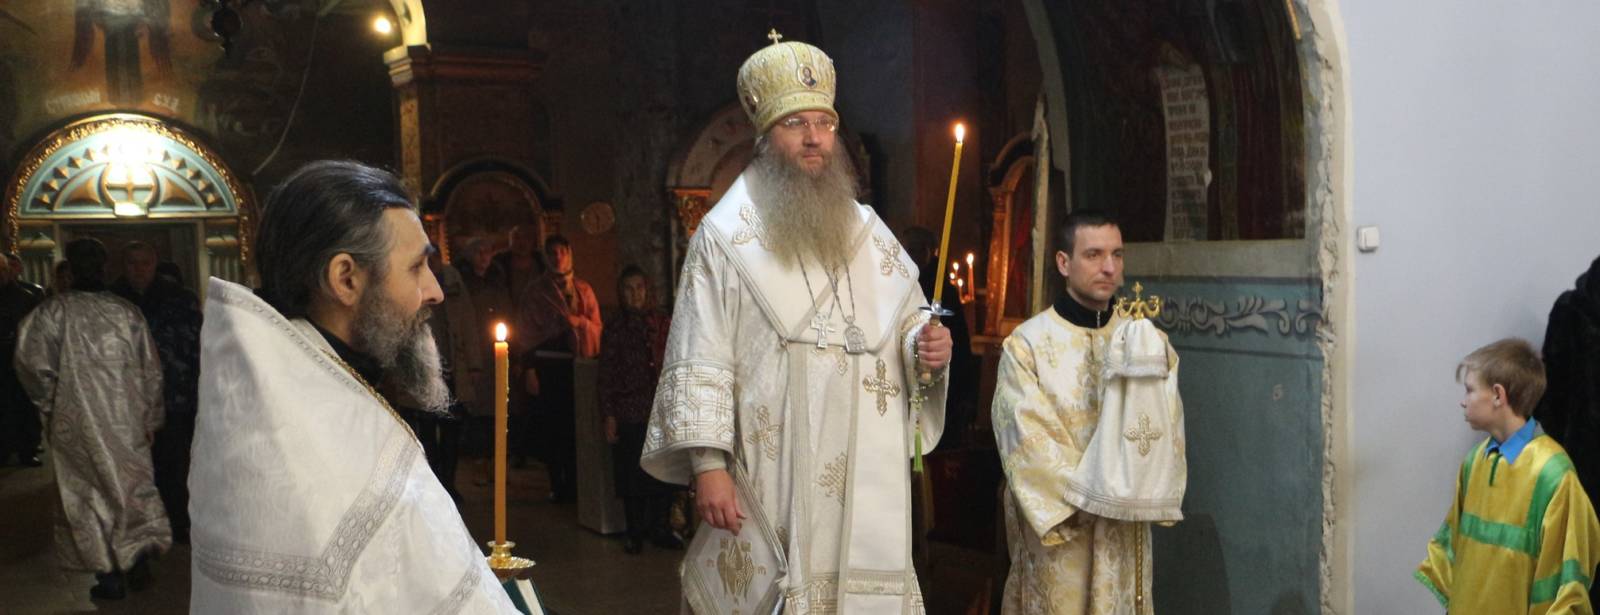 Служение епископа Елисея в канун дня памяти Свт. Филиппа в Покровском кафедральном соборе г. Урюпинска.